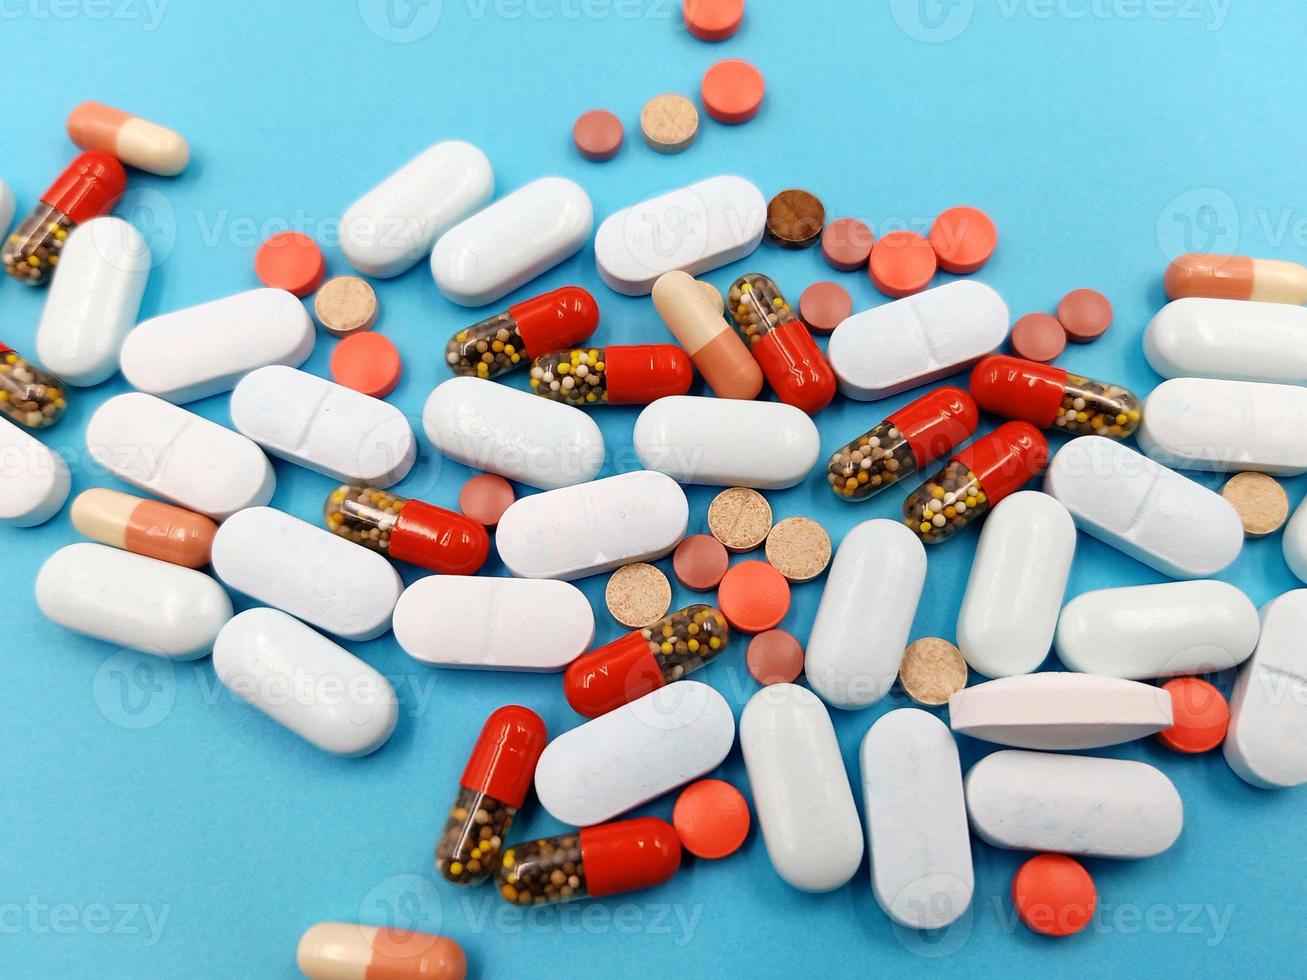 Surtido de píldoras, tabletas y cápsulas de medicamentos farmacéuticos foto